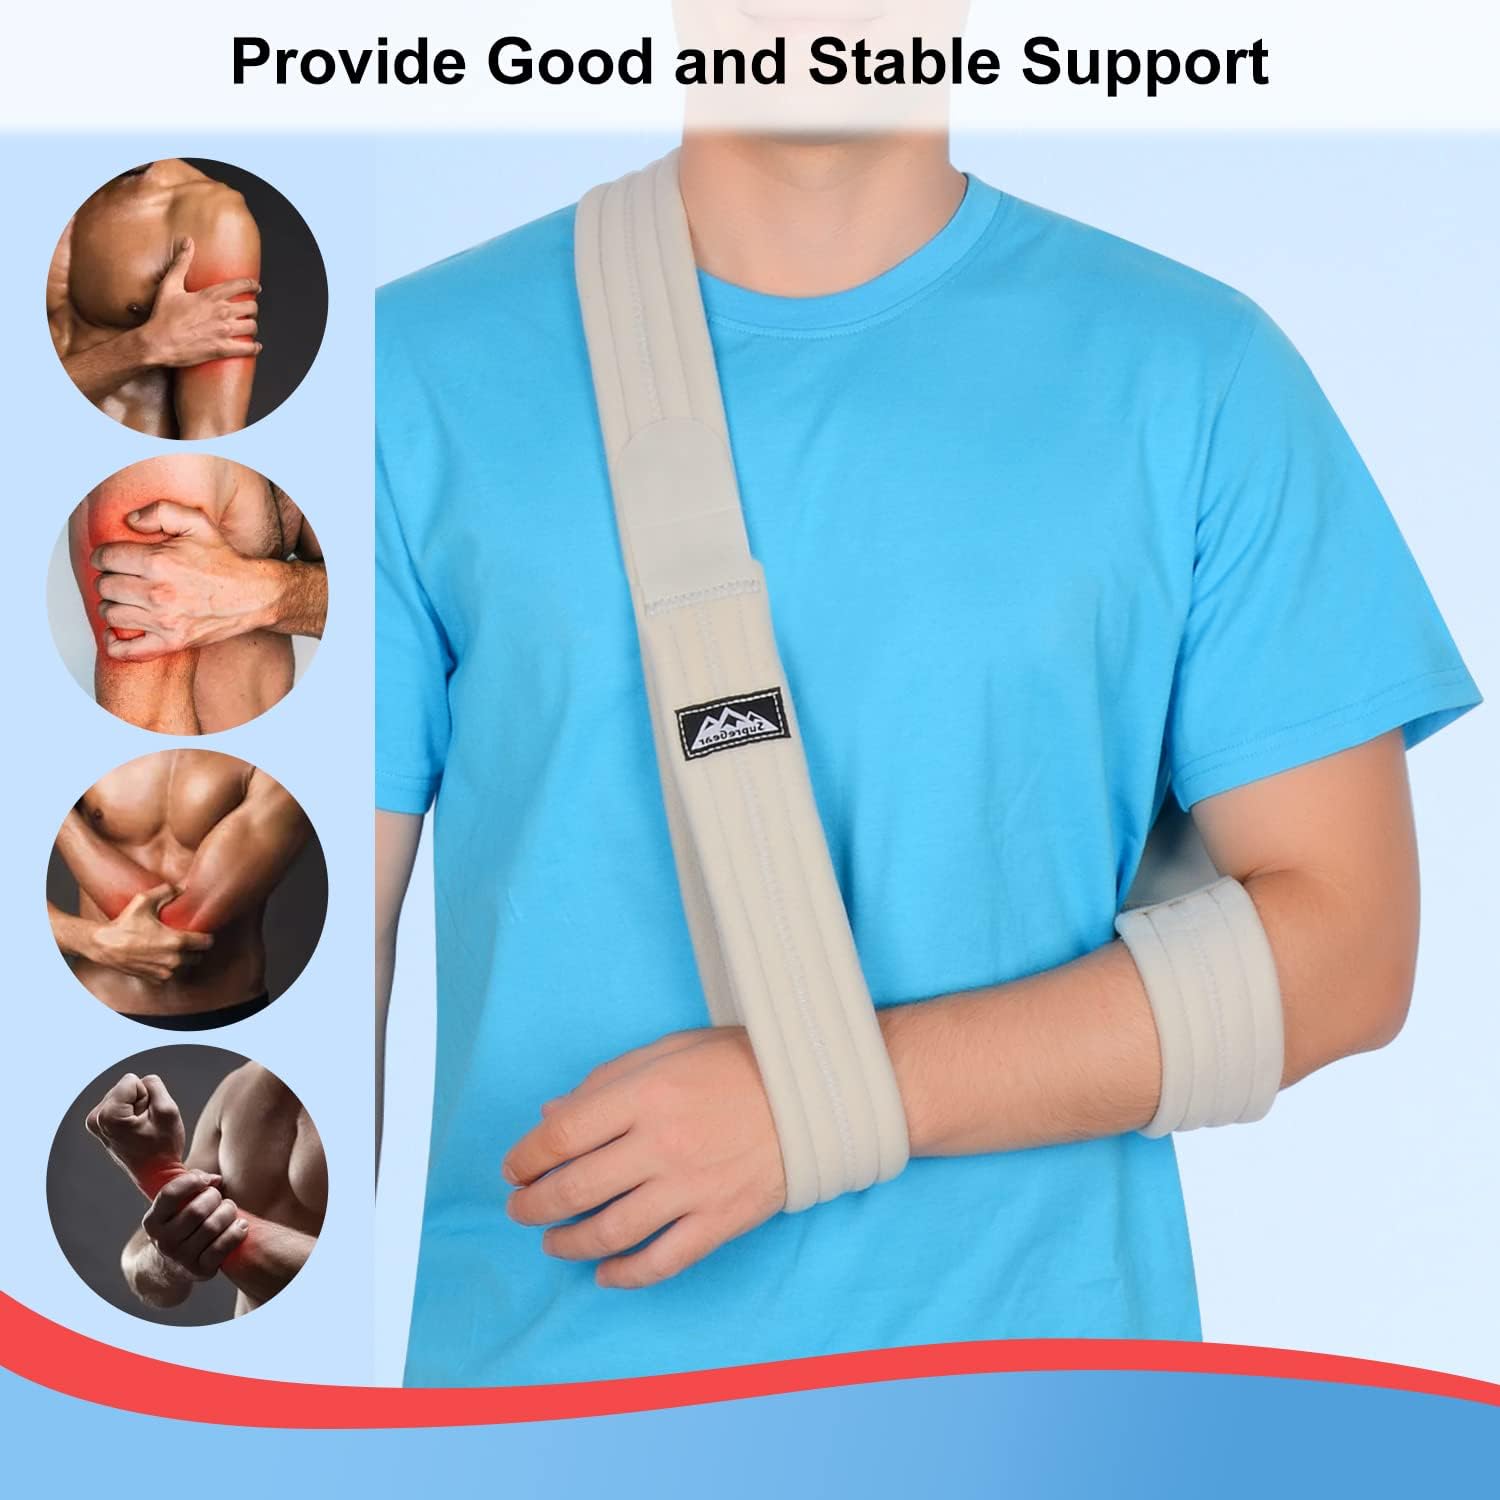 VP0304 VELPEAU Shoulder Sling Shoulder Support Brace